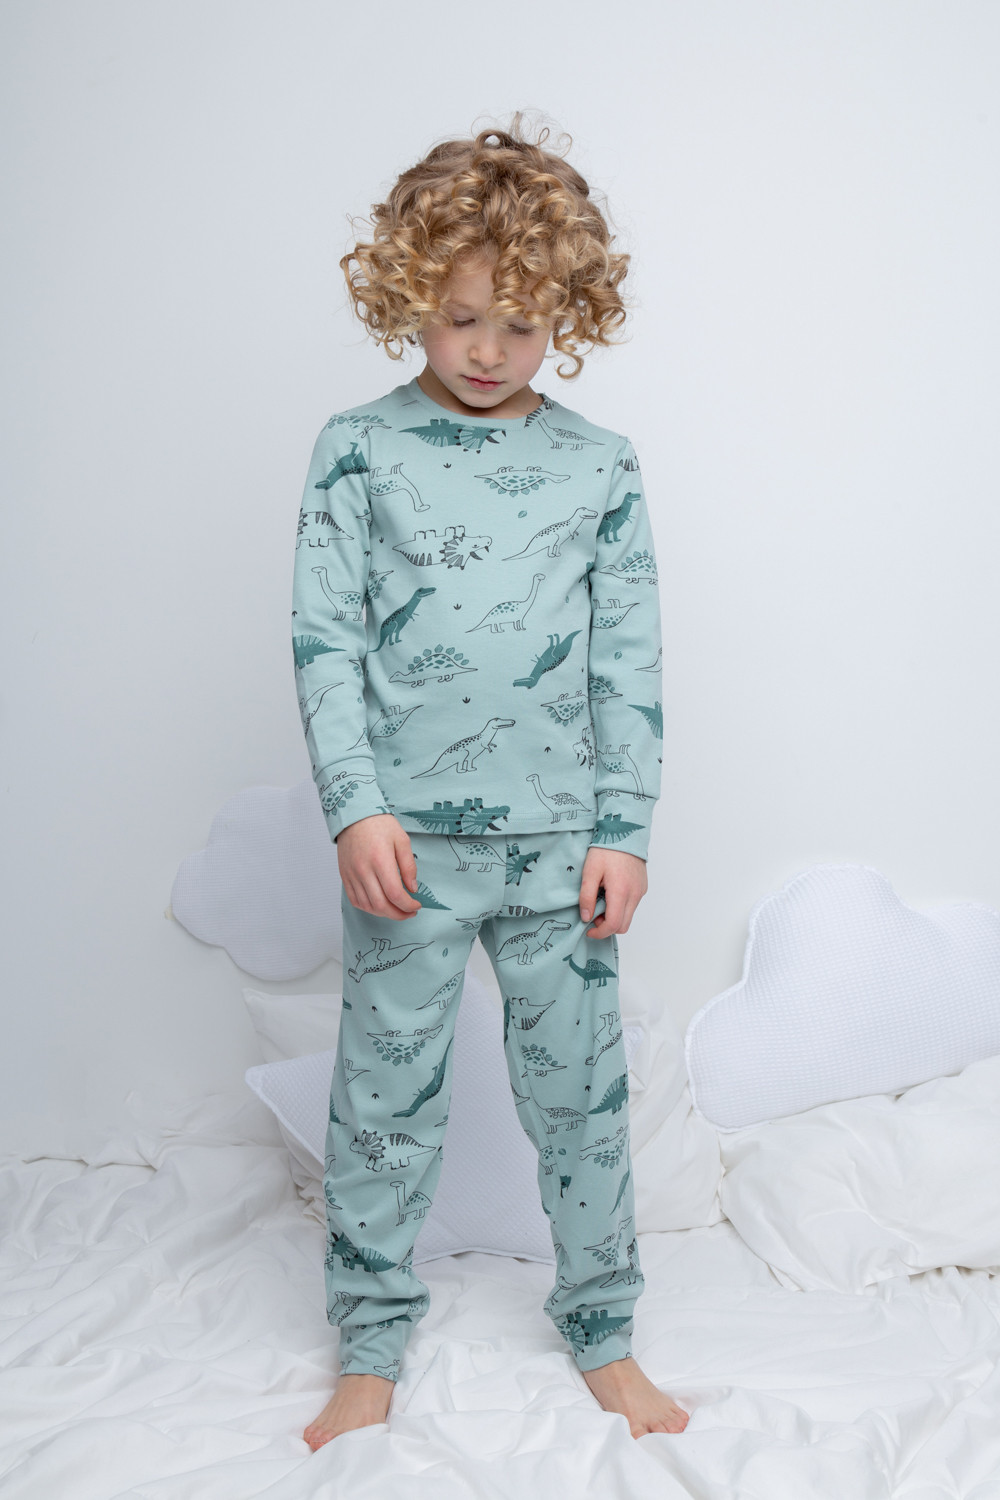 Пижама для мальчика Crockid К 1552 голубой прибой, динозавры | купить,  отзывы, цена